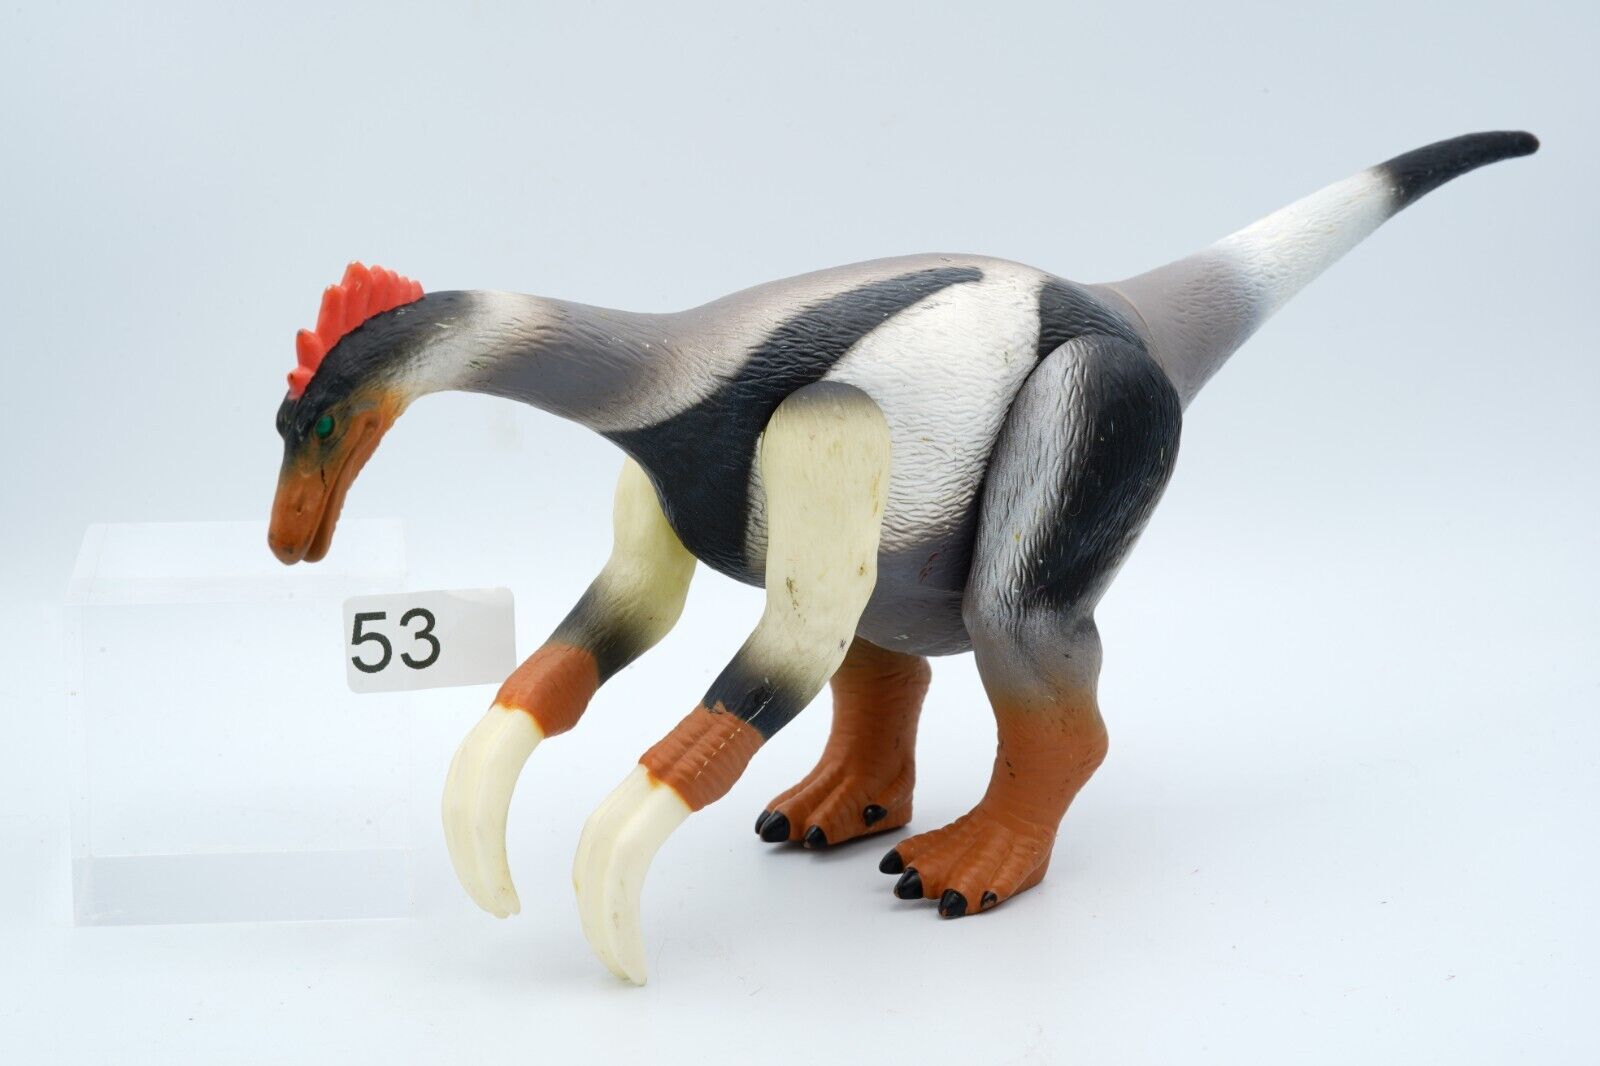 Dinosaur King SegaToys Sega Soft Large FIgure dinosaur Japan 